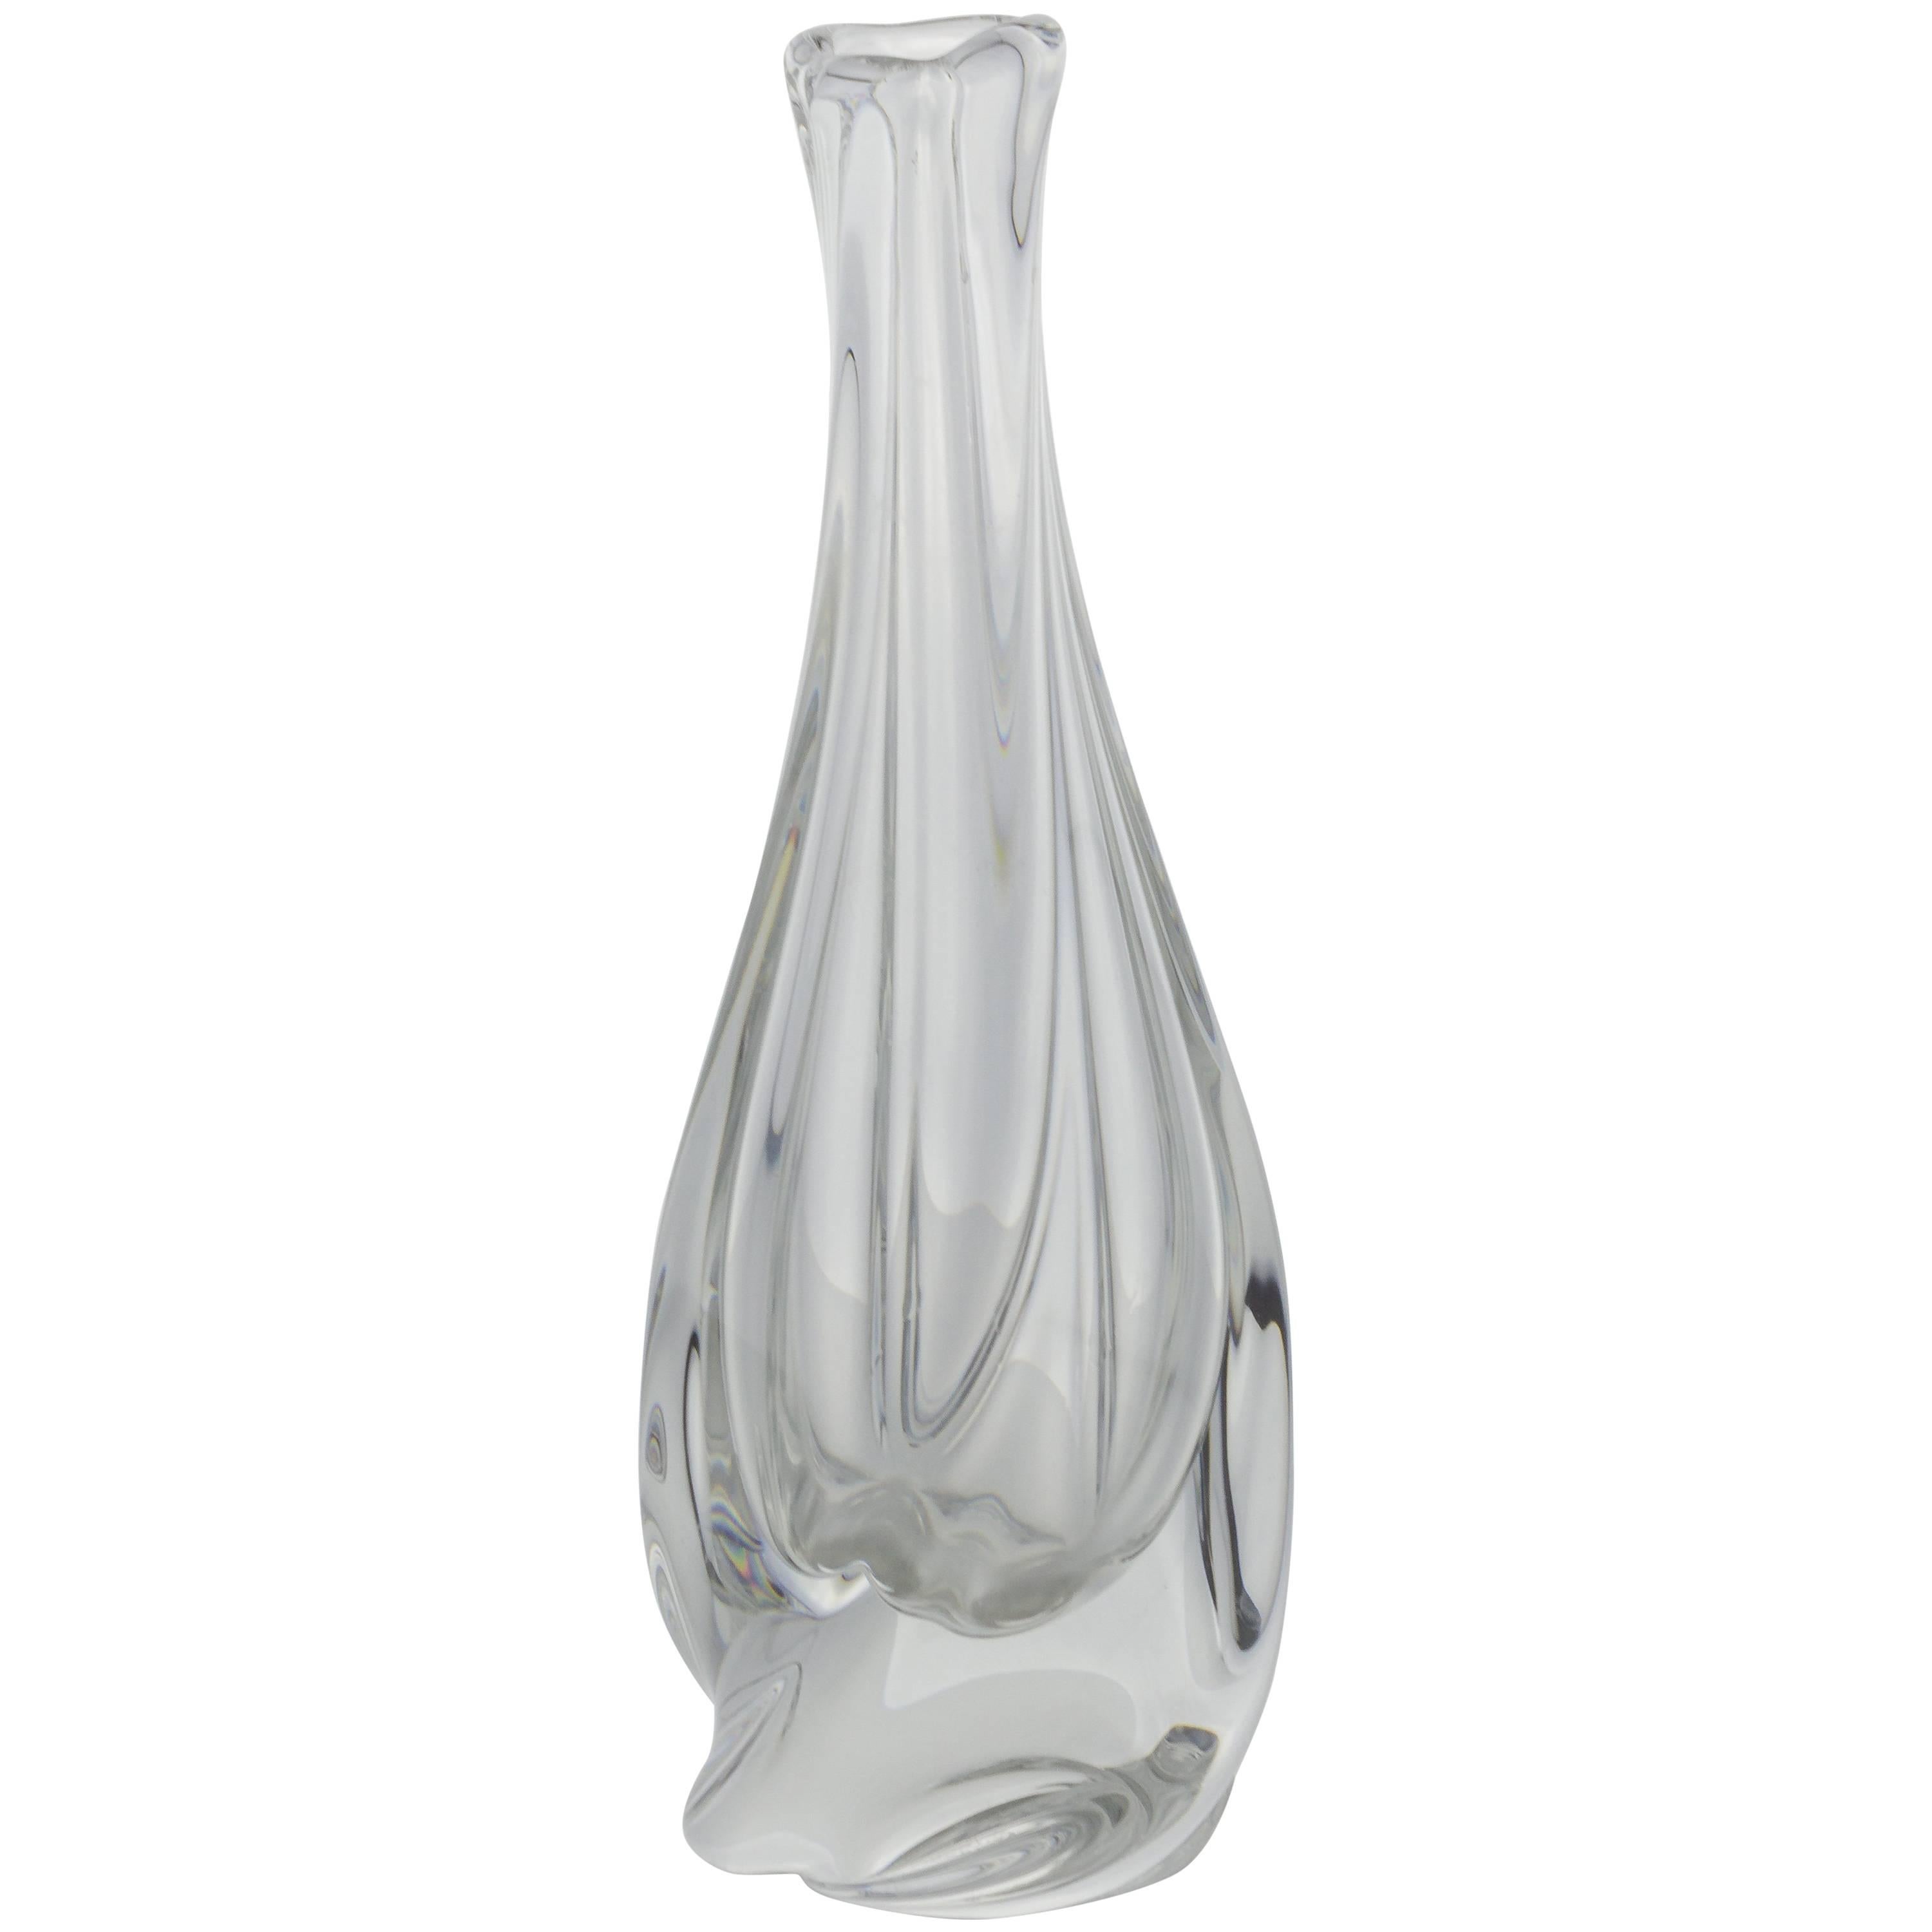 French Crystal Bud Vase